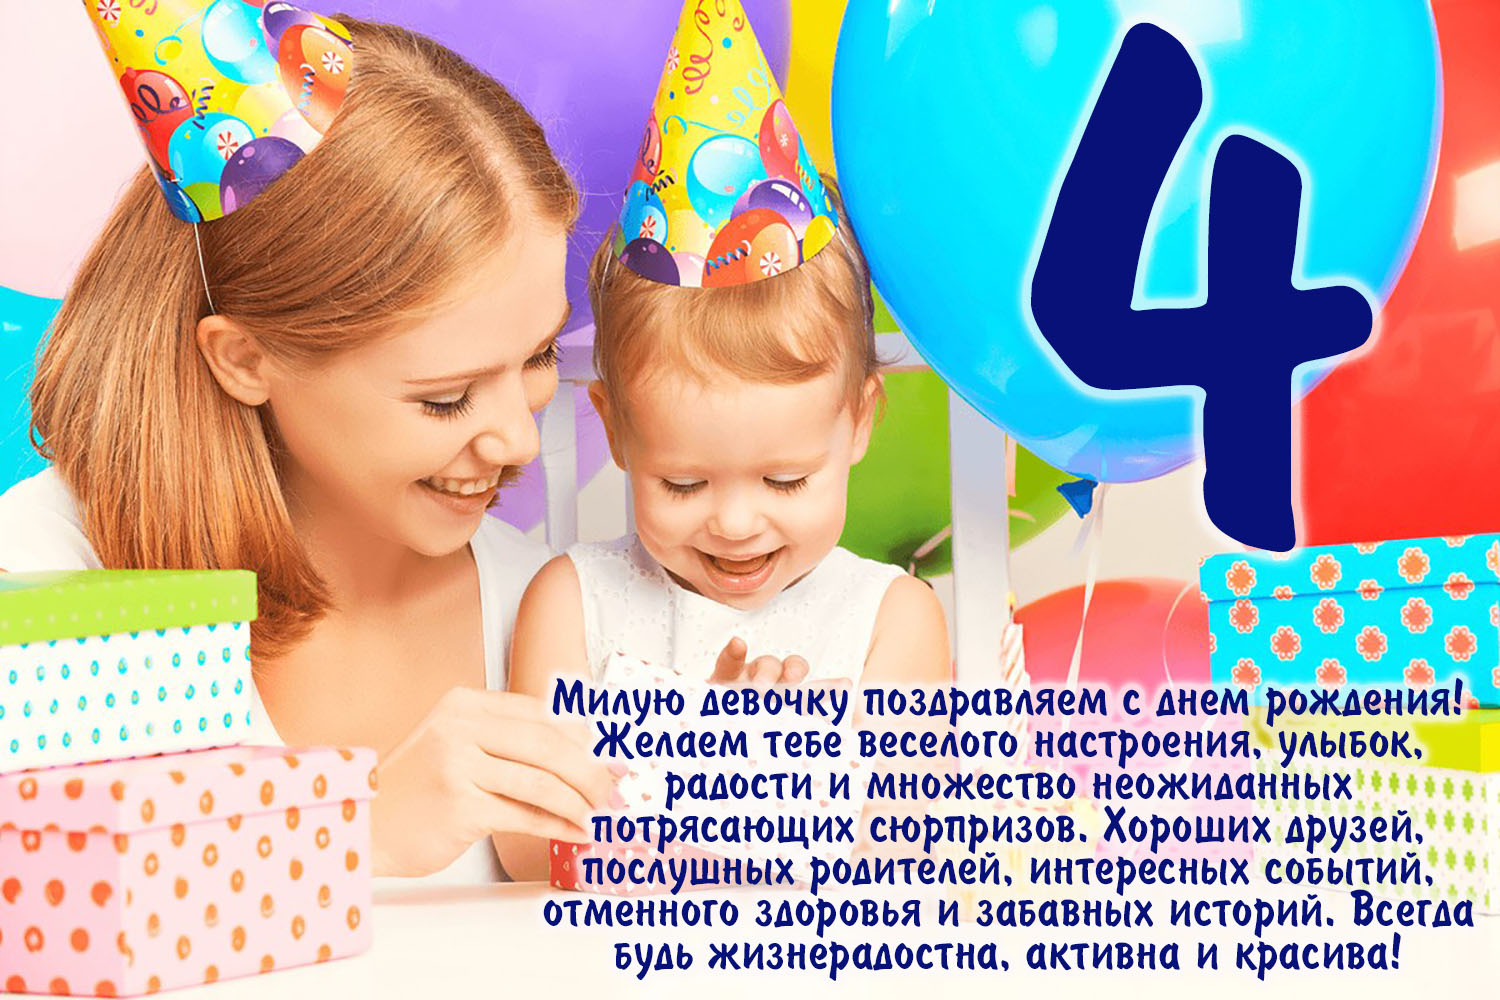 Песня день рождения 4 года. С днем рождения девочк4 года. С днём рождения дныочке 4 года. С днём рождения 4 года девочке. Поздравление с 4 летием девочке.